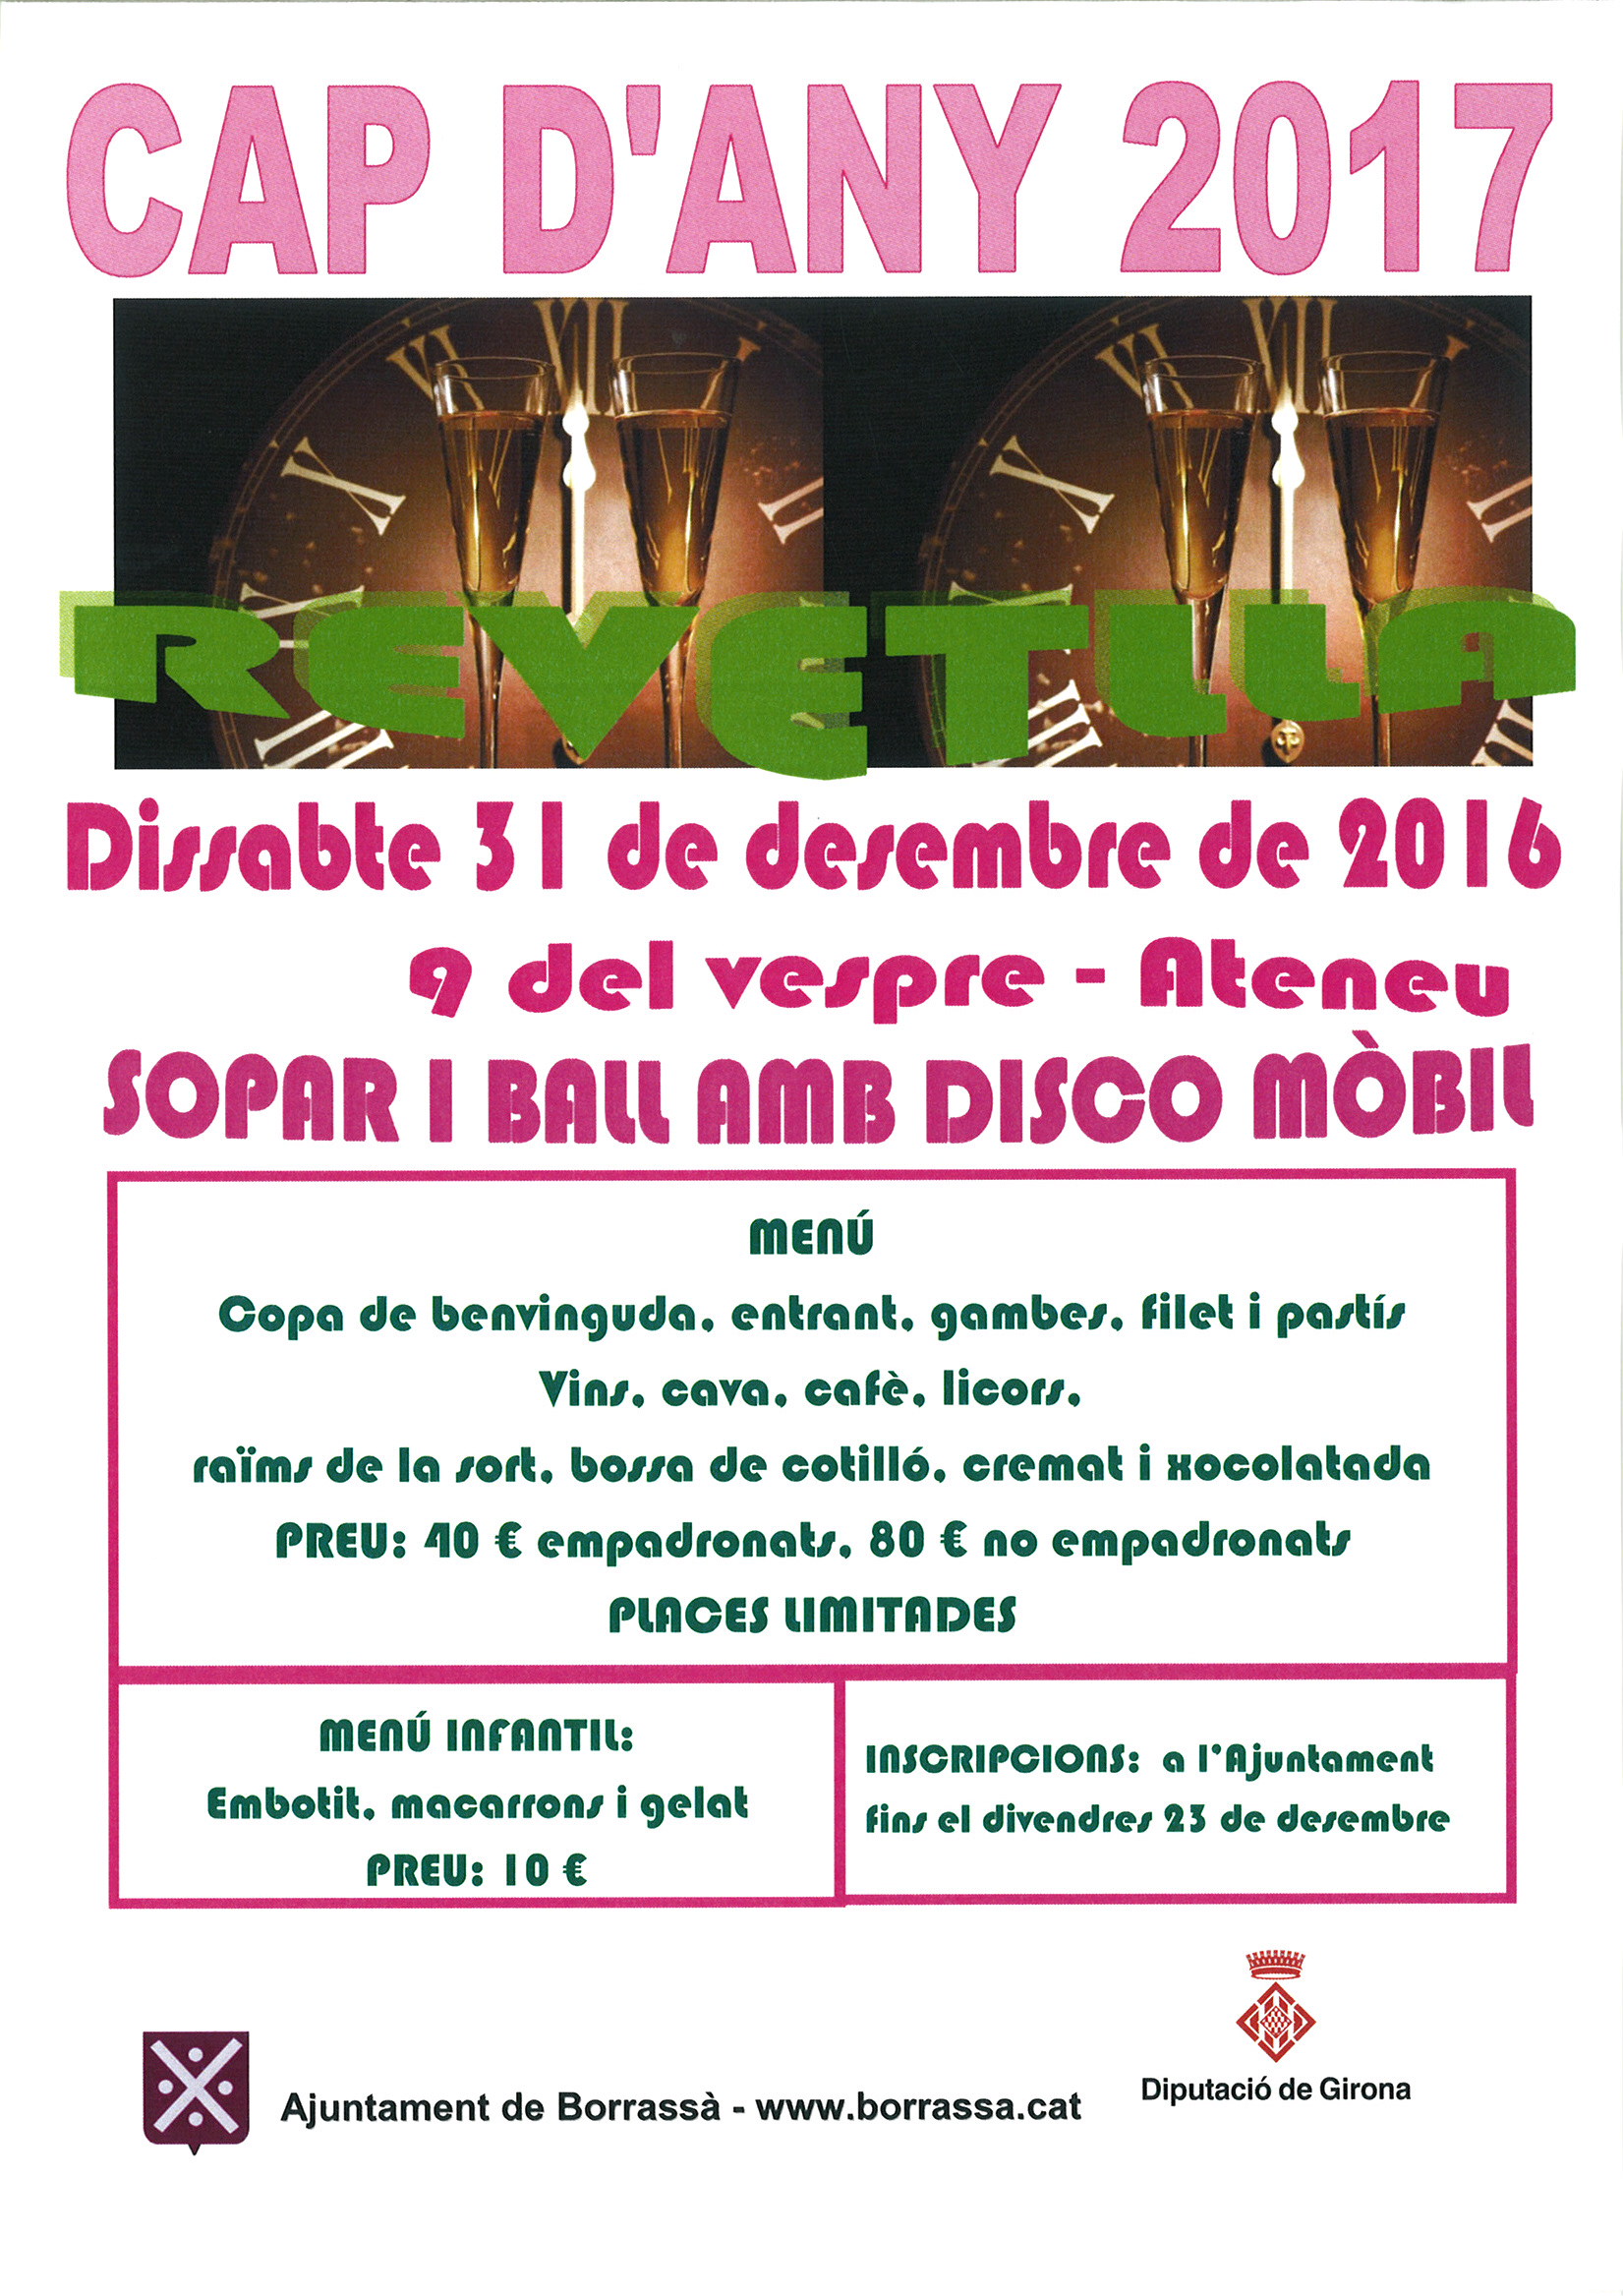 Cap d'Any 2017 a Borrassà. El poble celebrarà la revetlla la nit de Cap d'Any amb una festa a la Sala de l'Ateneu.